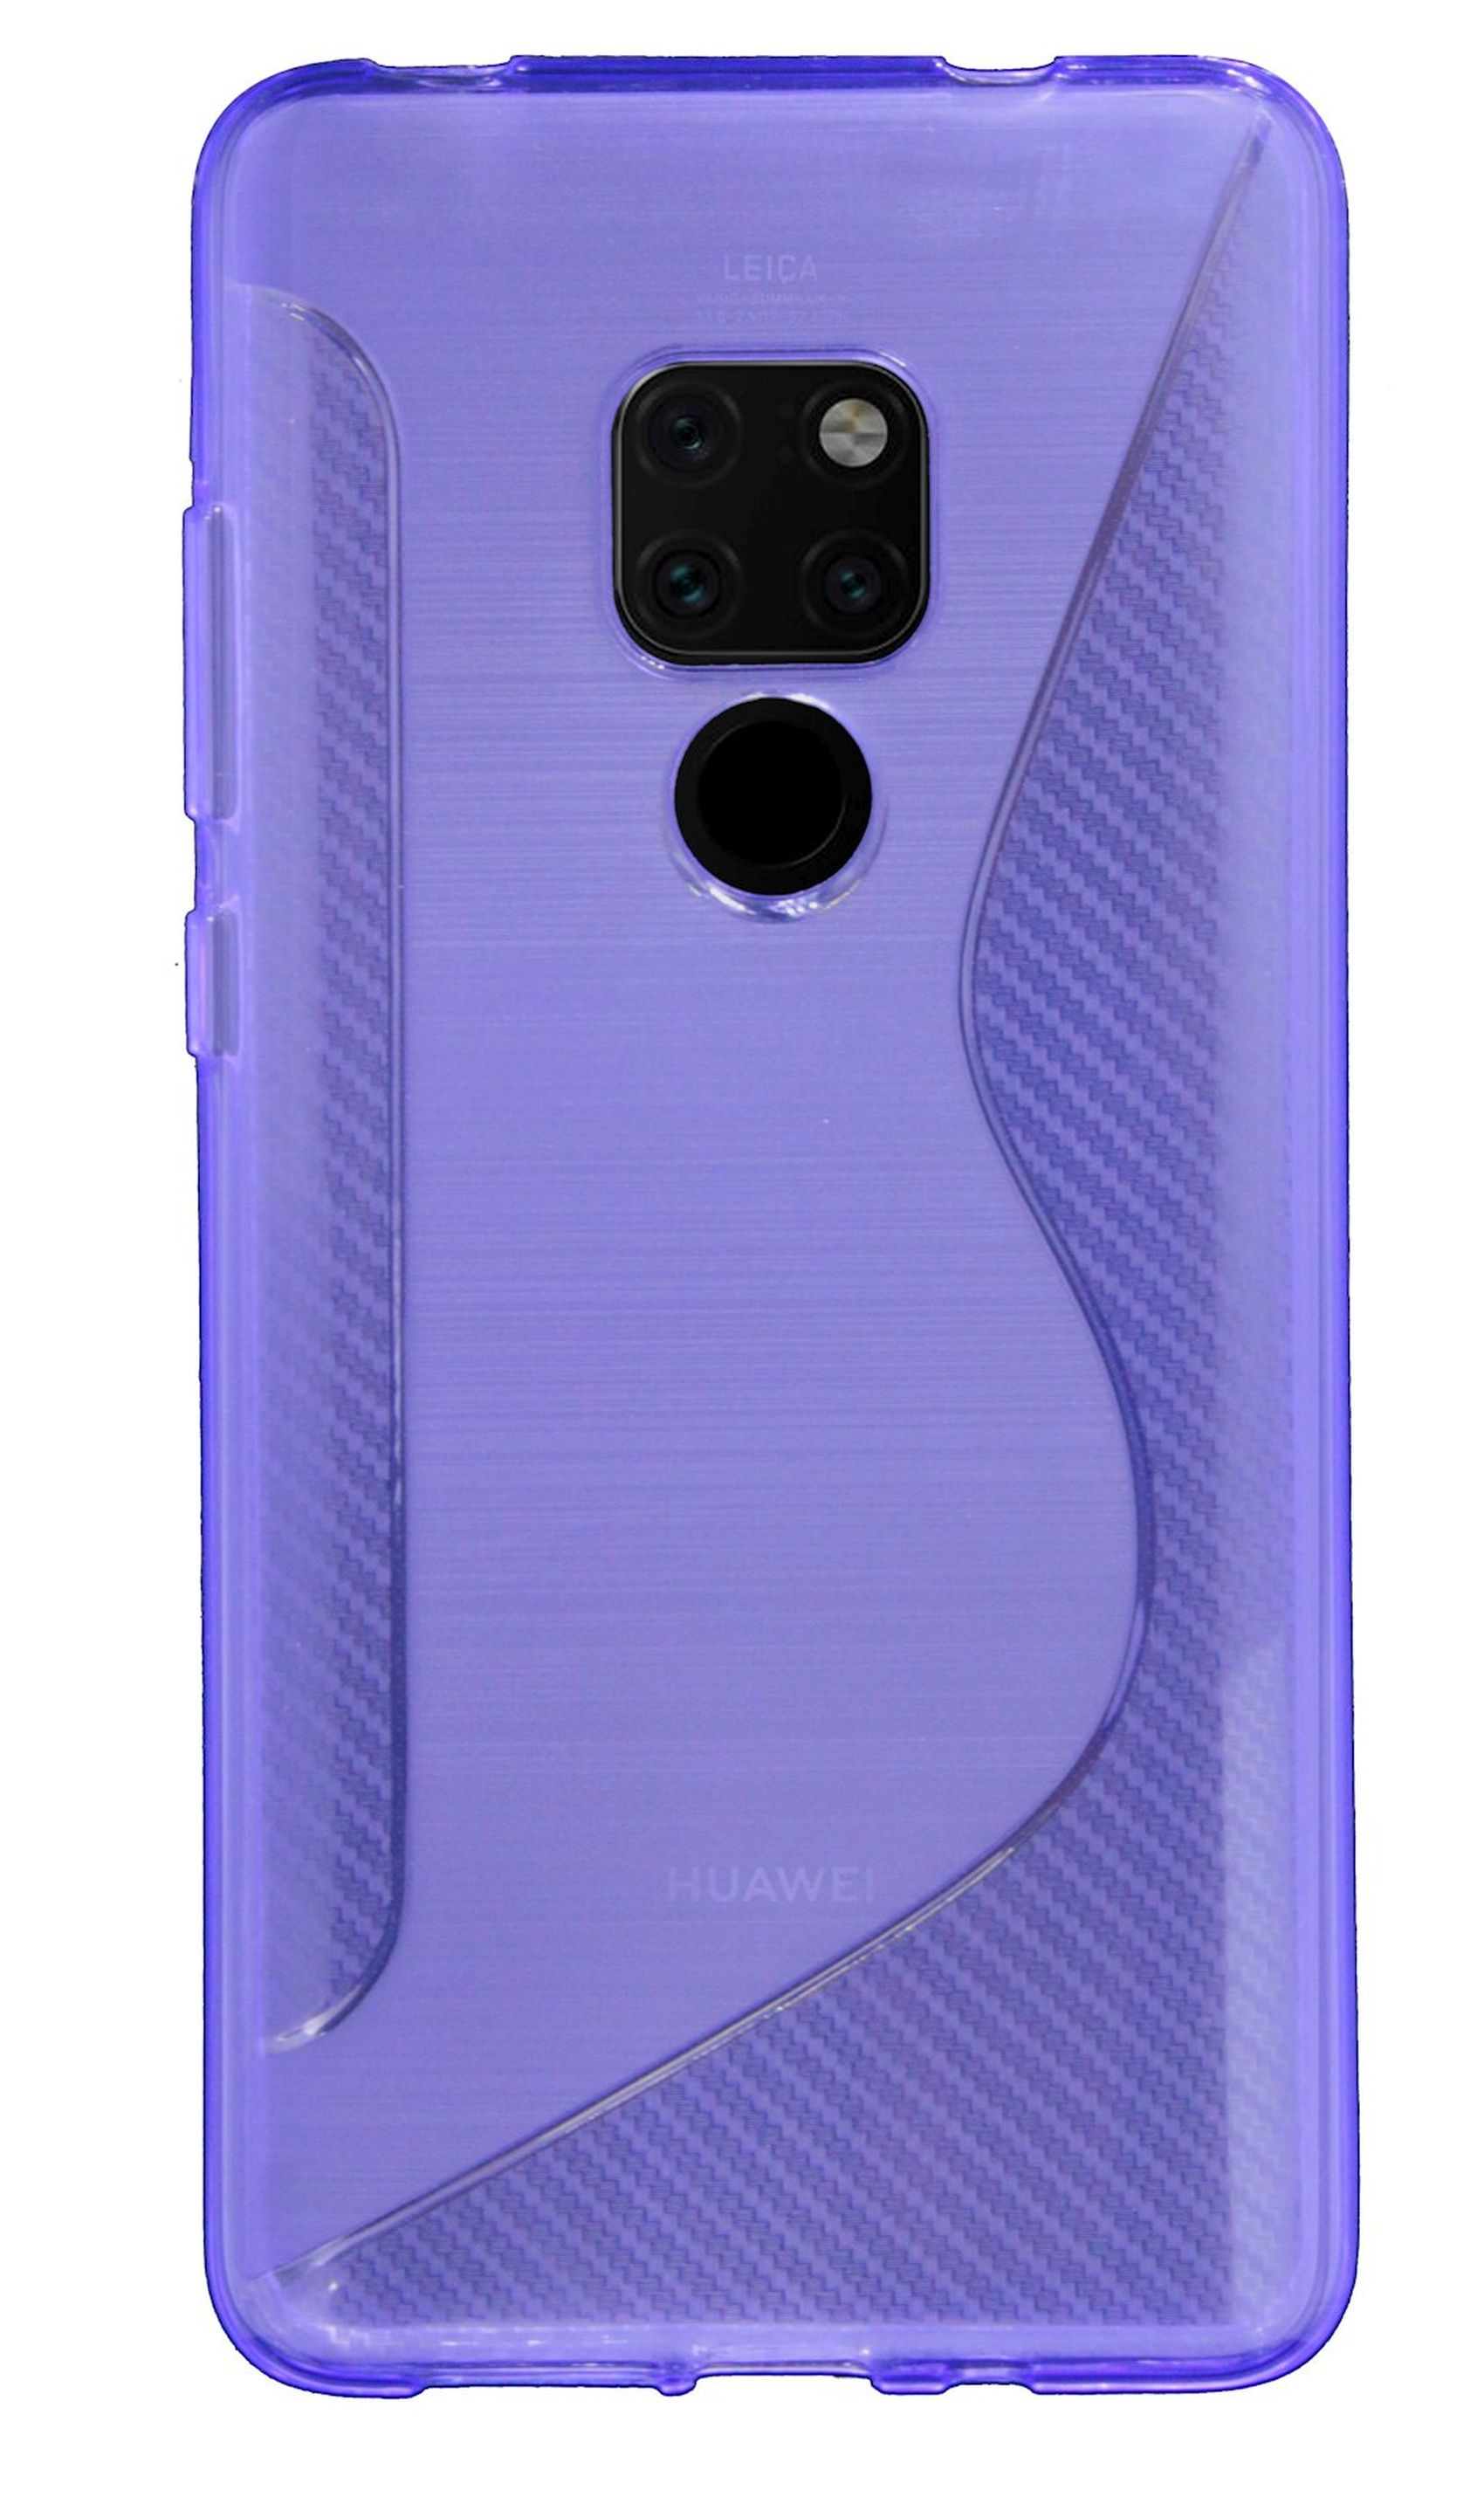 Mate Violett 20, COFI S-Line Cover, Huawei, Bumper,